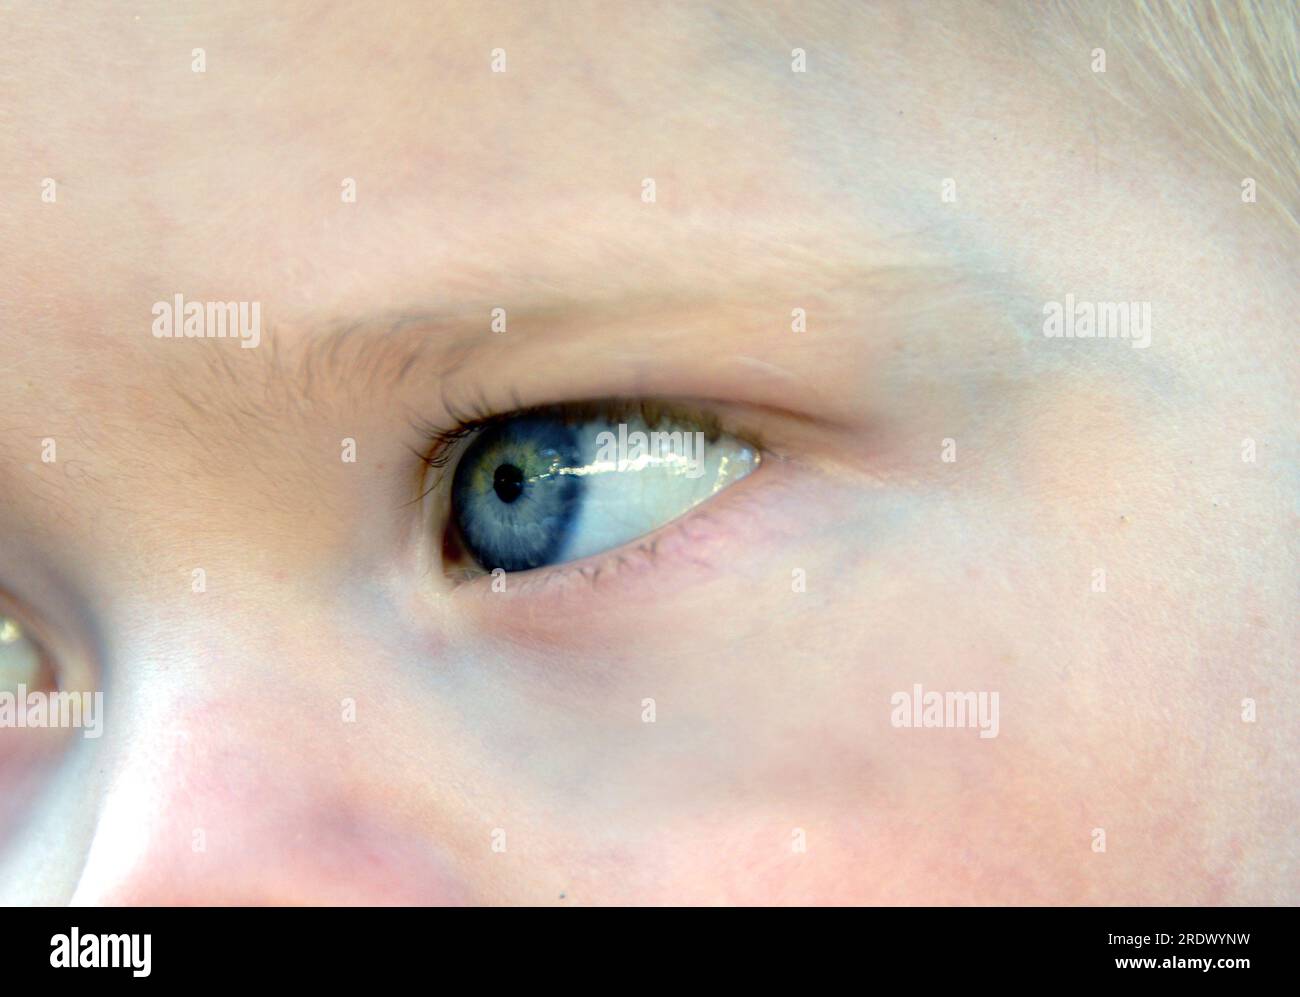 Ein blaues Auge auf einen kleinen Jungen sieht zur Seite. Extreme Nahaufnahme des Säuglings Auge. Stockfoto